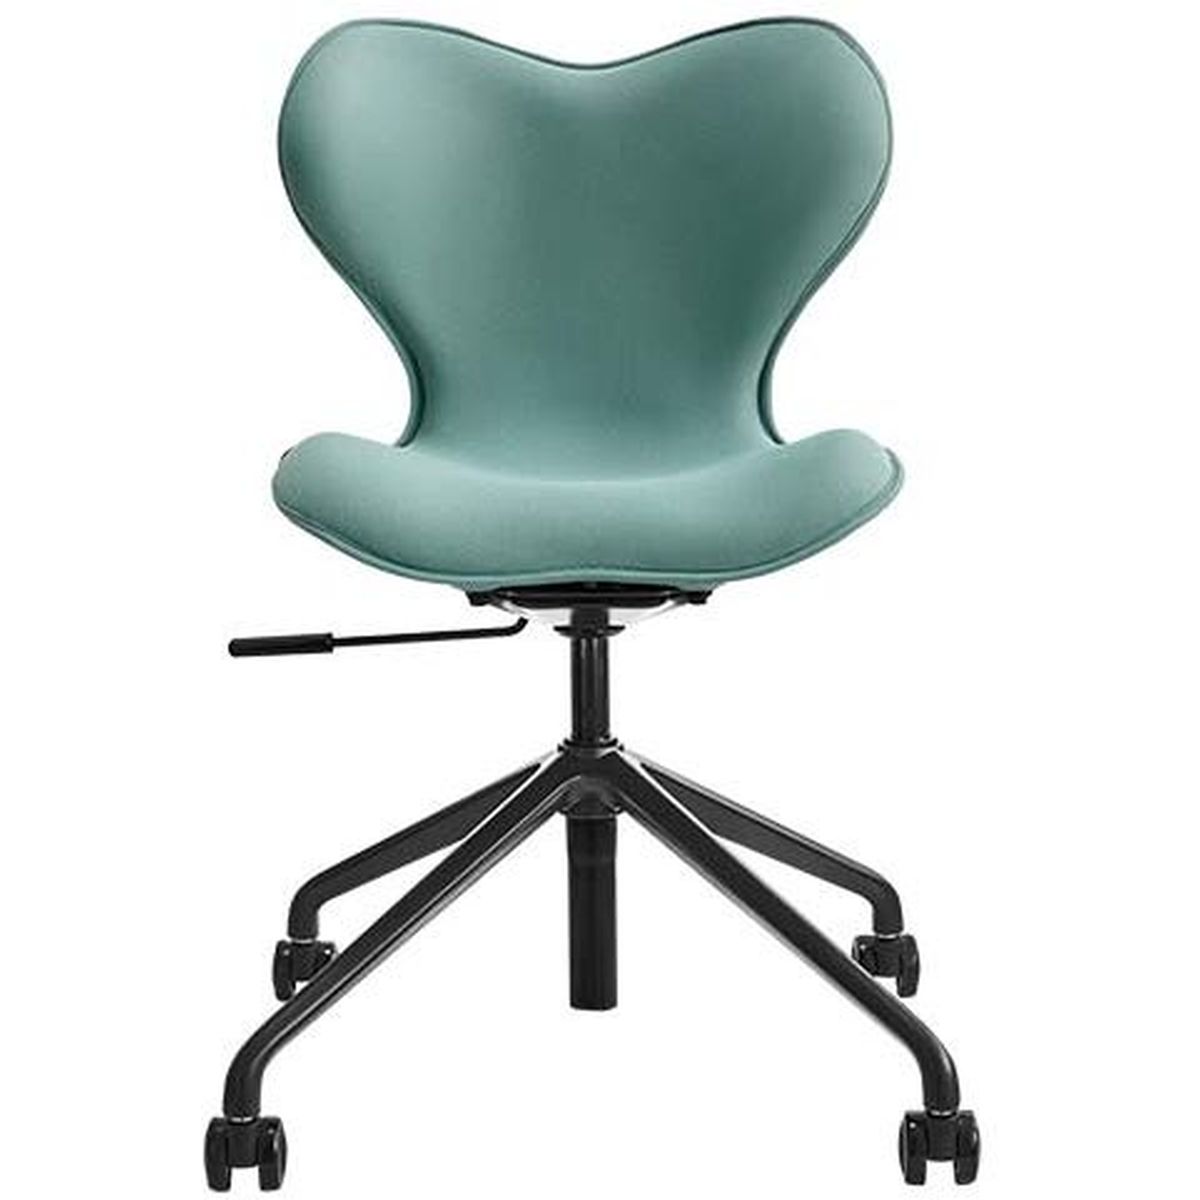 Style Chair SMC（フォレストグリーン）